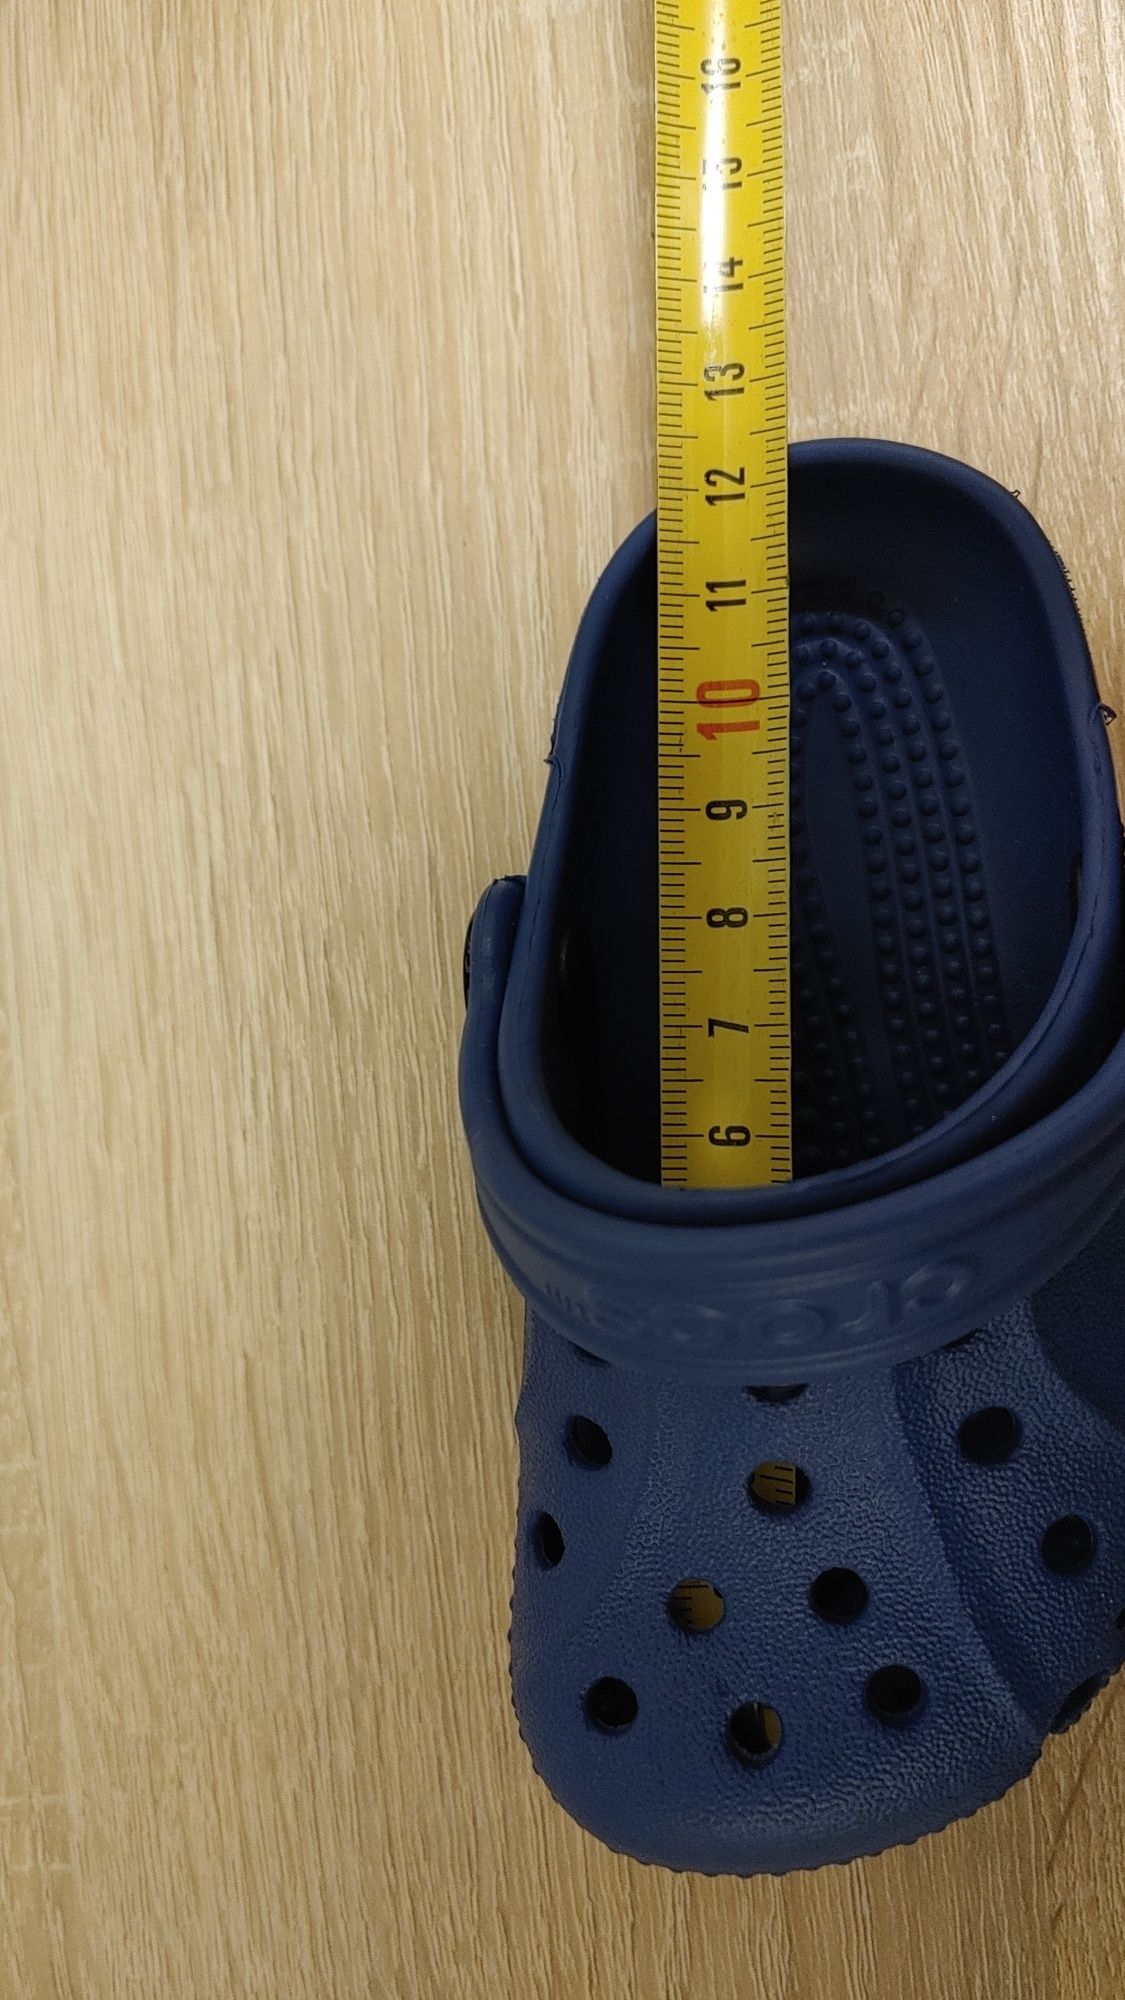 Nowe Crocsy granatowe rozmiar 19 C4-5 wkładka 12cm kapcie buty